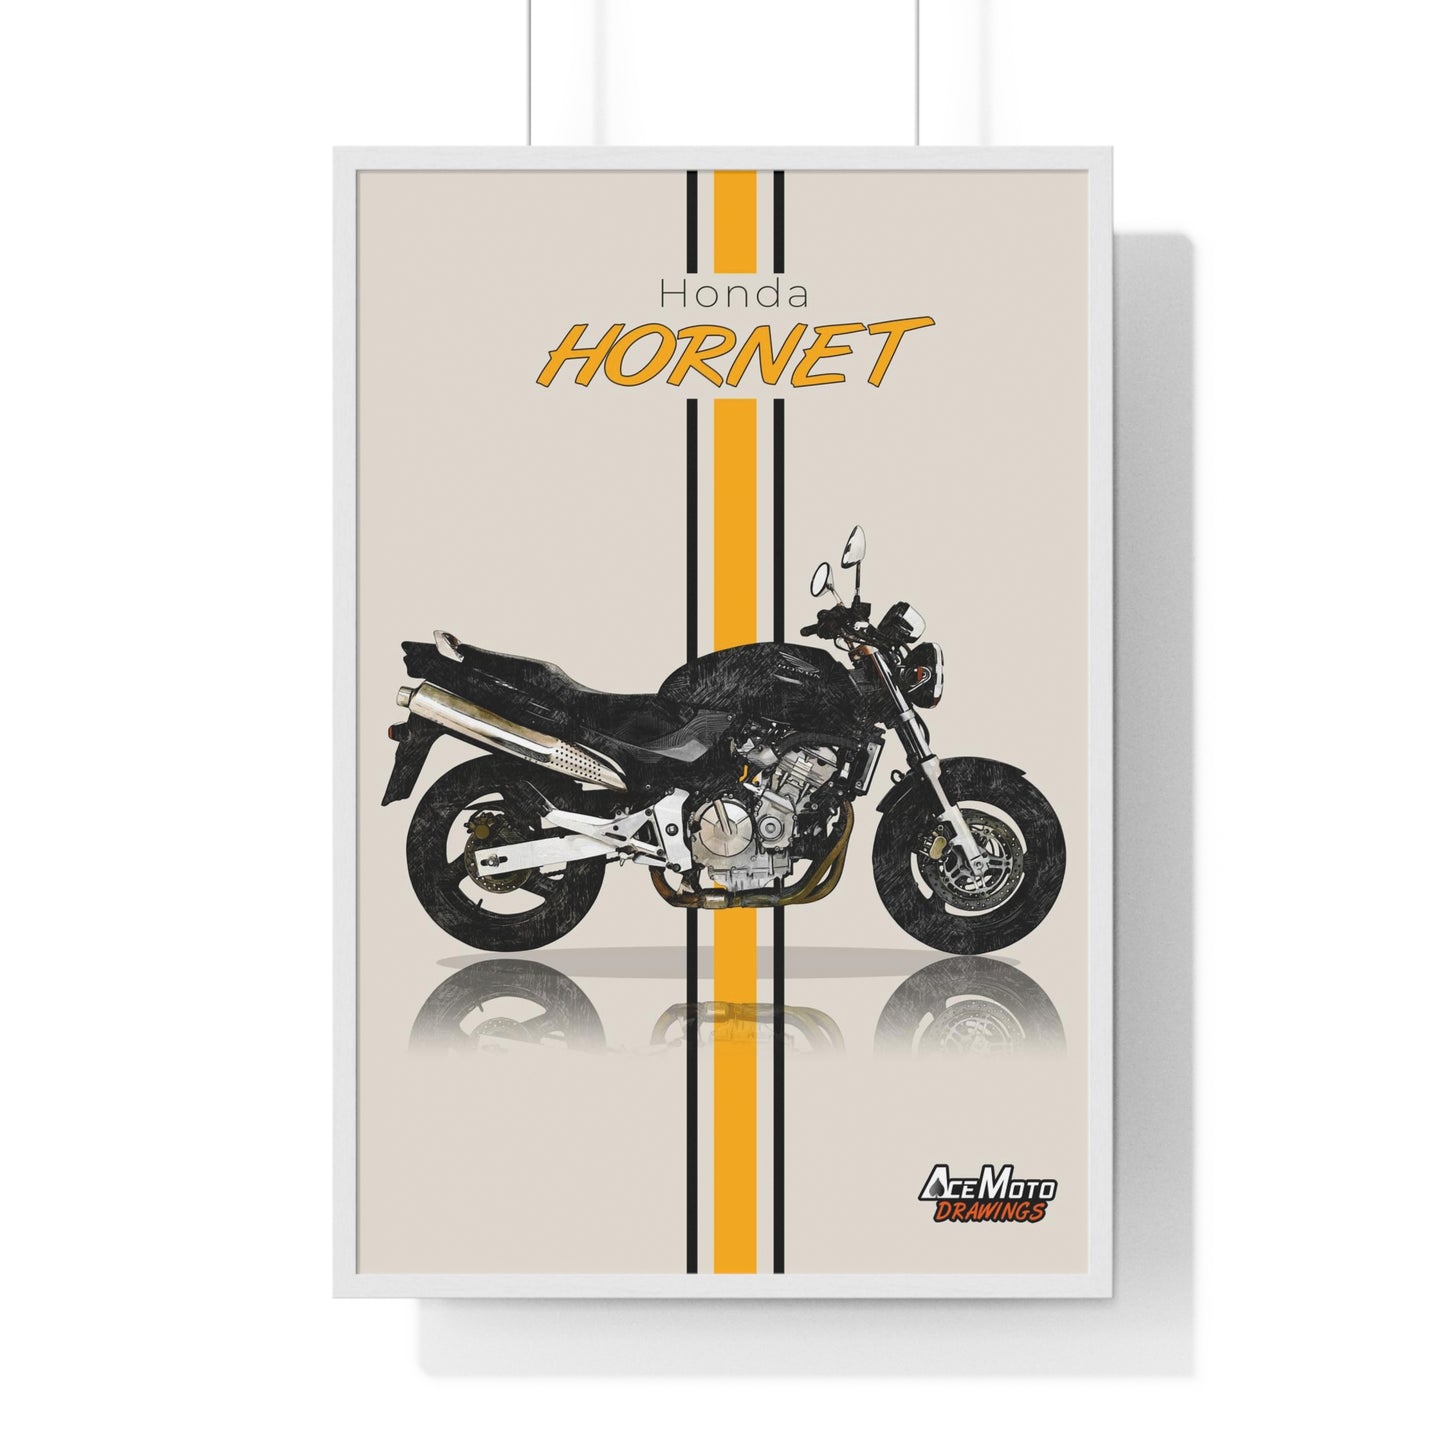 Honda Hornet CB600F | Wall Art - Frame Poster - 1998